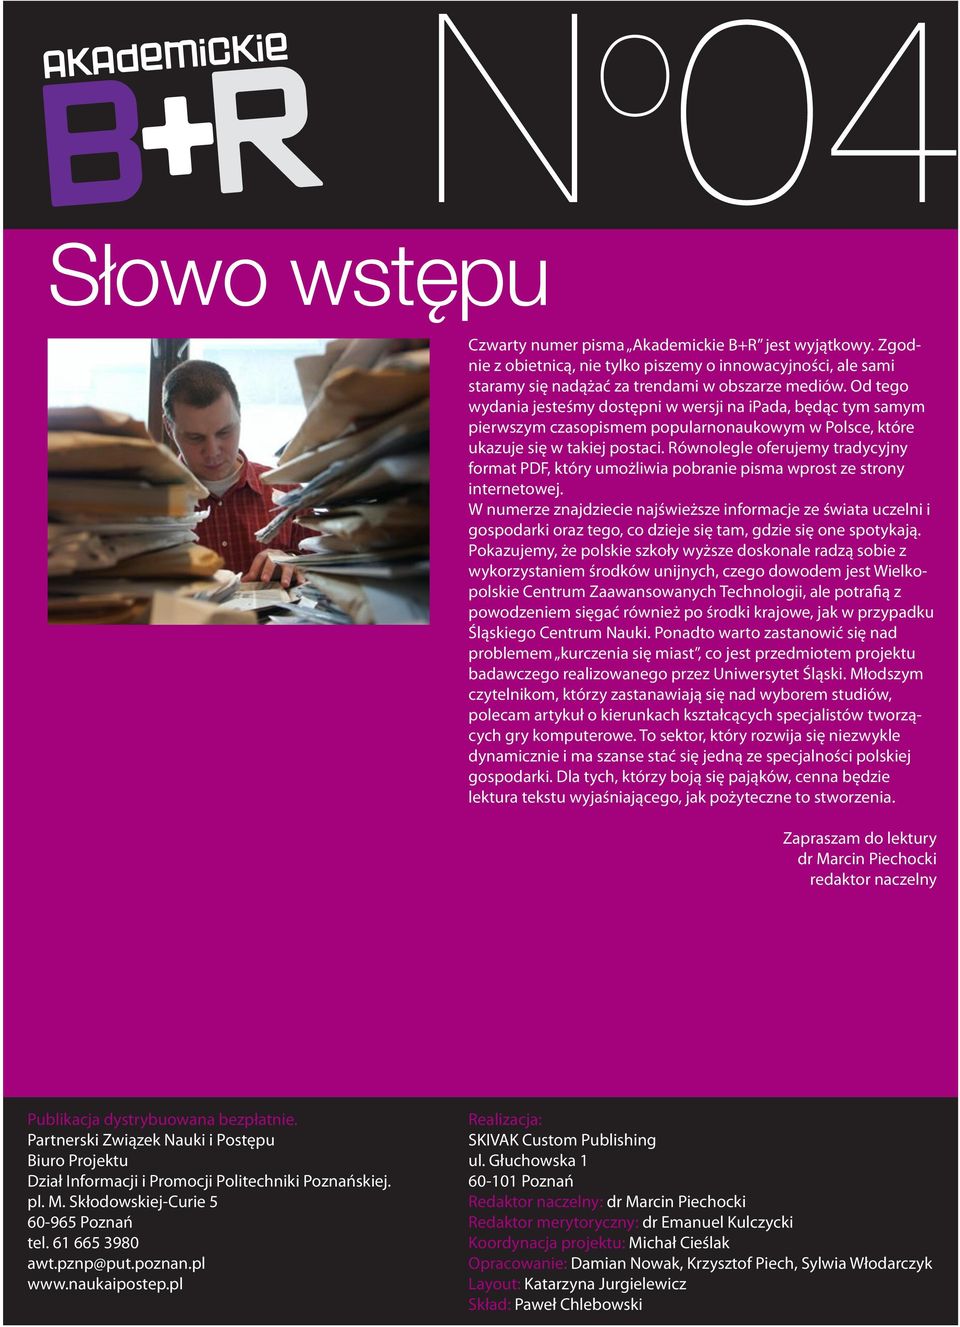 Od tego wydania jesteśmy dostępni w wersji na ipada, będąc tym samym pierwszym czasopismem popularnonaukowym w Polsce, które ukazuje się w takiej postaci.